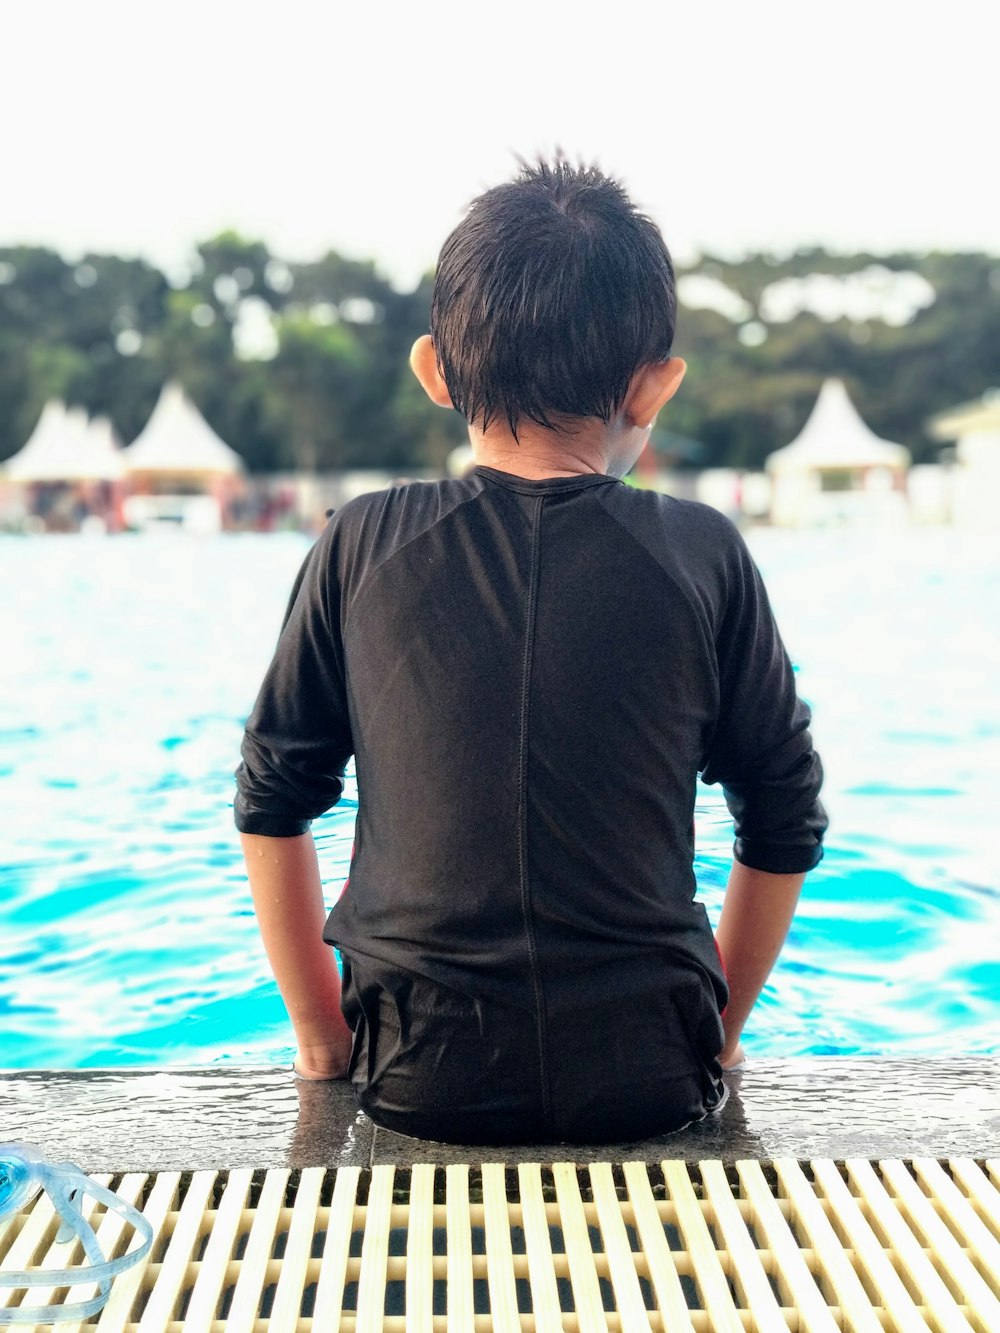 boy wearing black shirt sitting beside pool